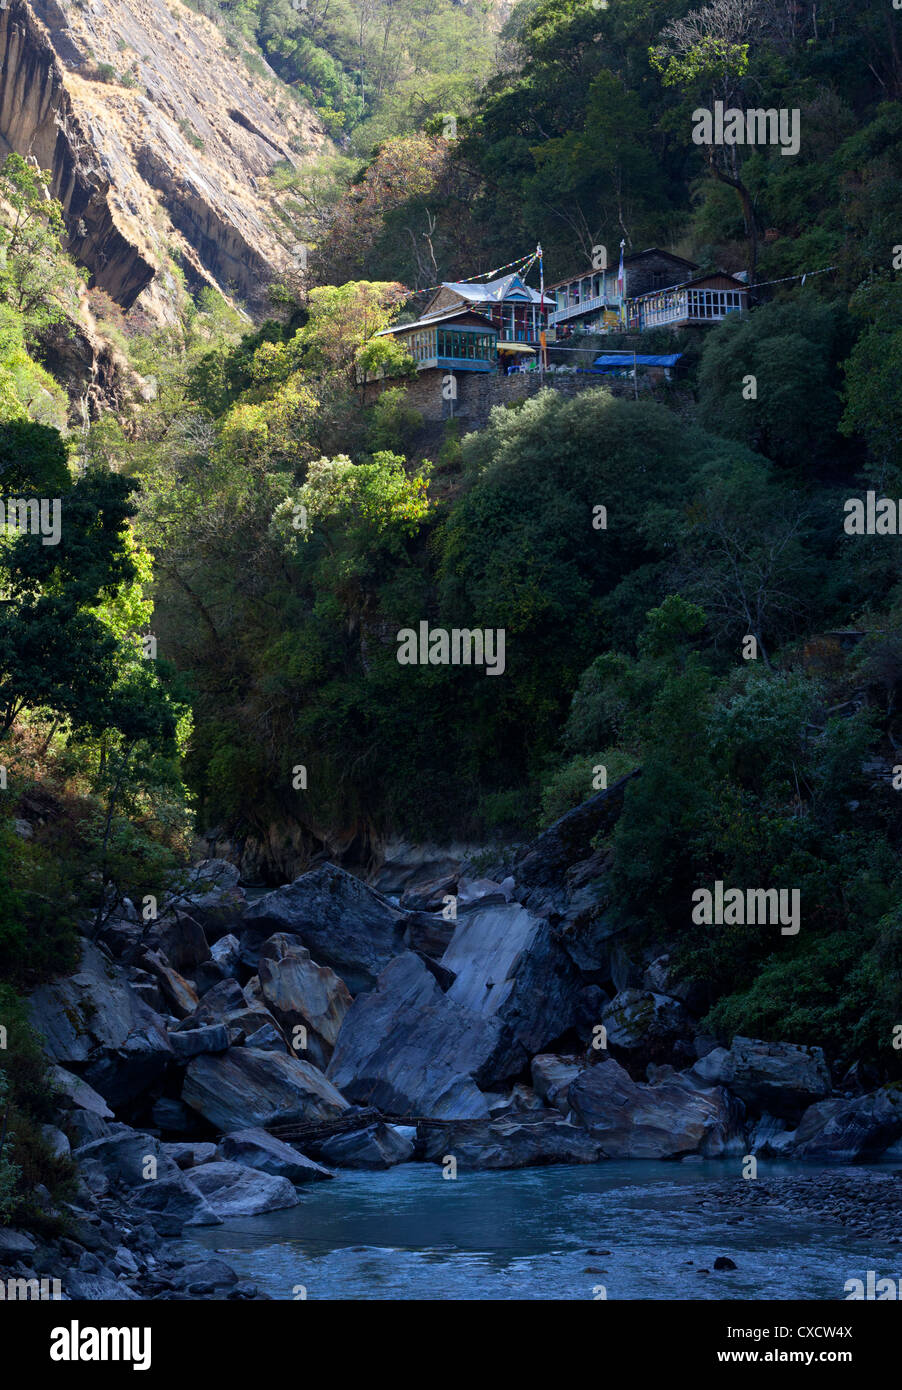 View of Pahiro, Langtang valley, Nepal Stock Photo